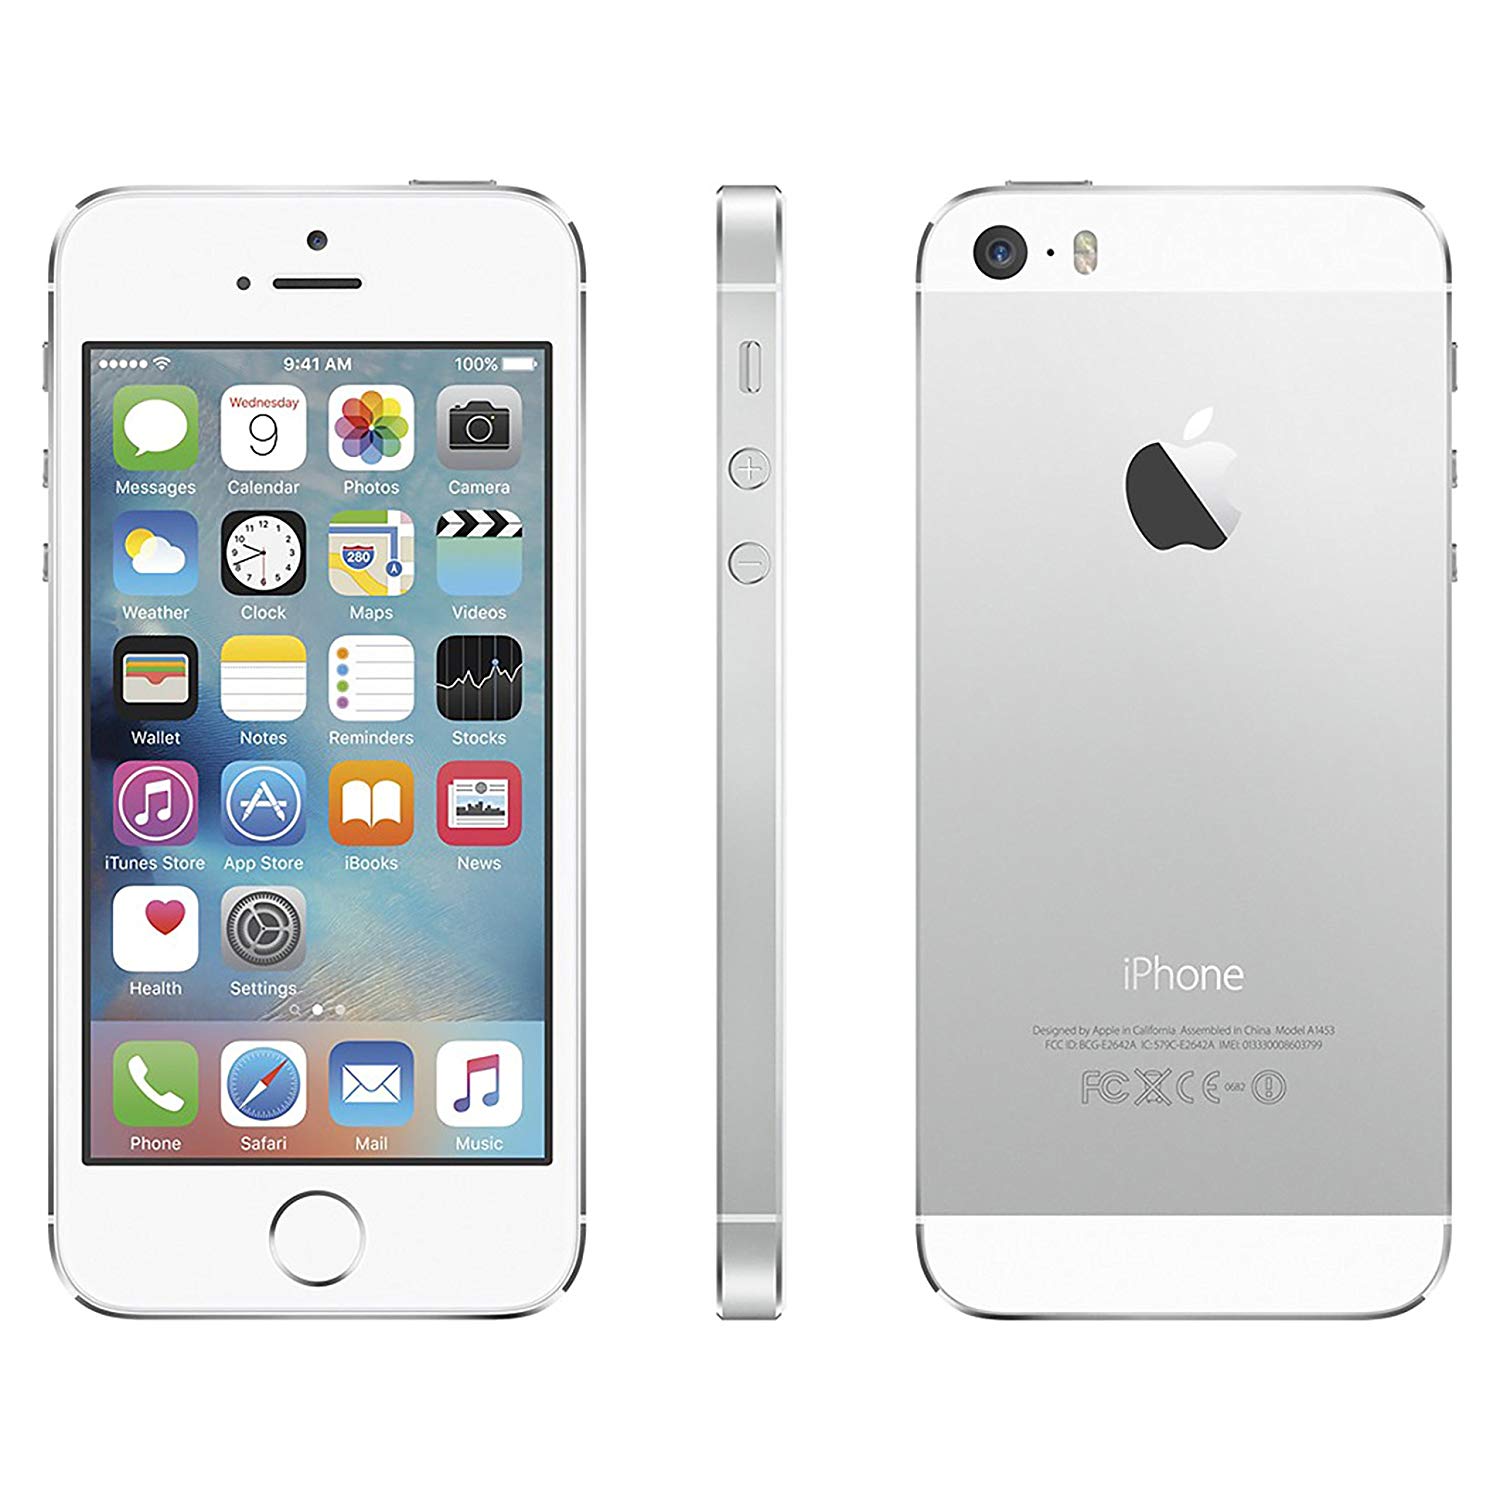 苹果(Apple) iPhone 5S（金色版）手机图片欣赏,图6-万维家电网